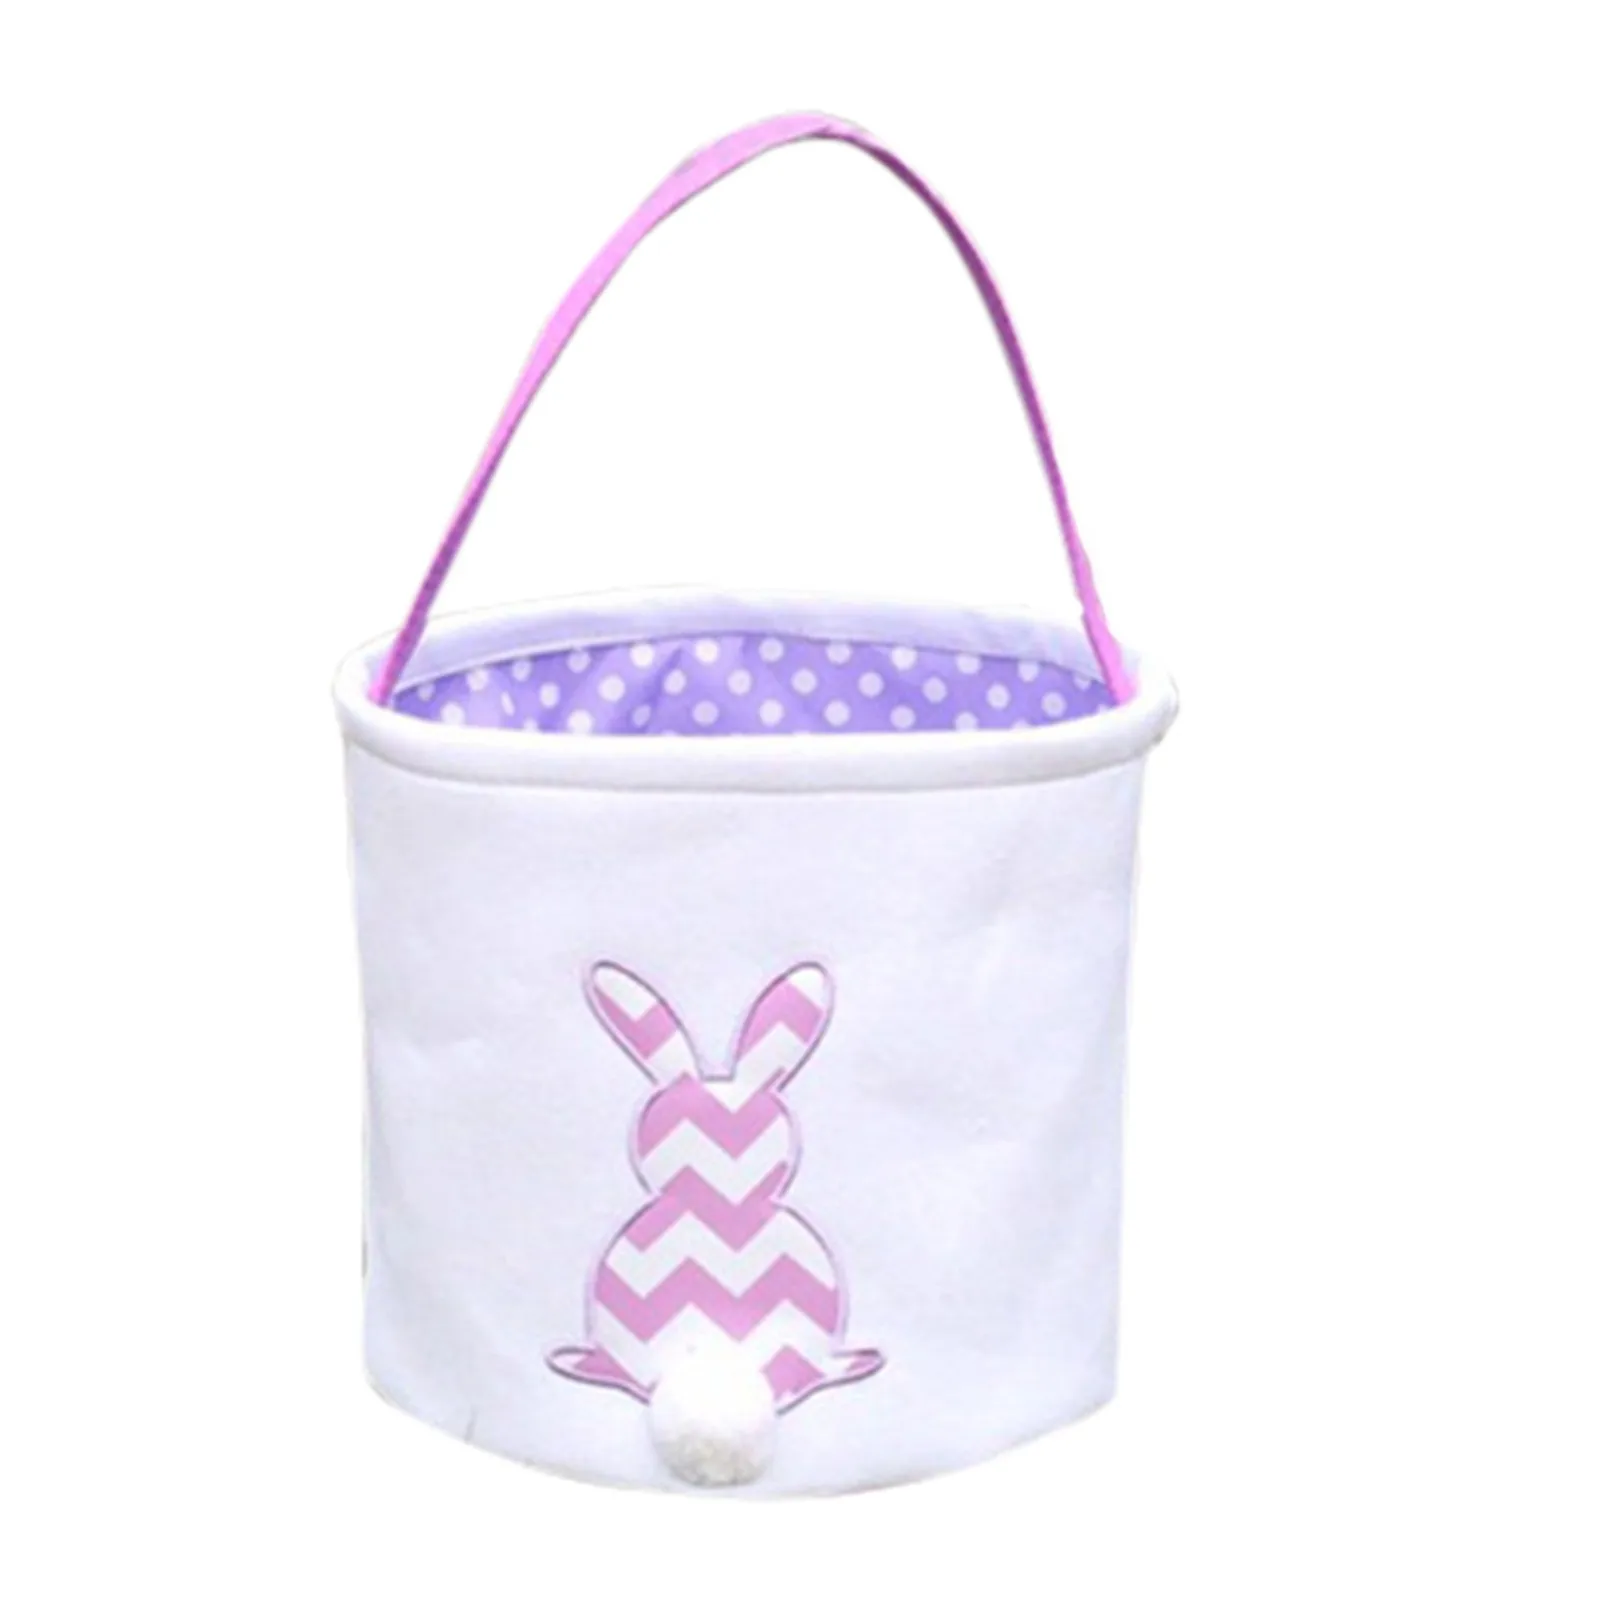 Горячая распродажа Пасхальных Украшений Bunny Rabbit Basket, подарочные коробки для Детей, Милая Сумка для хранения конфет, сумки-пакеты, Бесплатная доставка